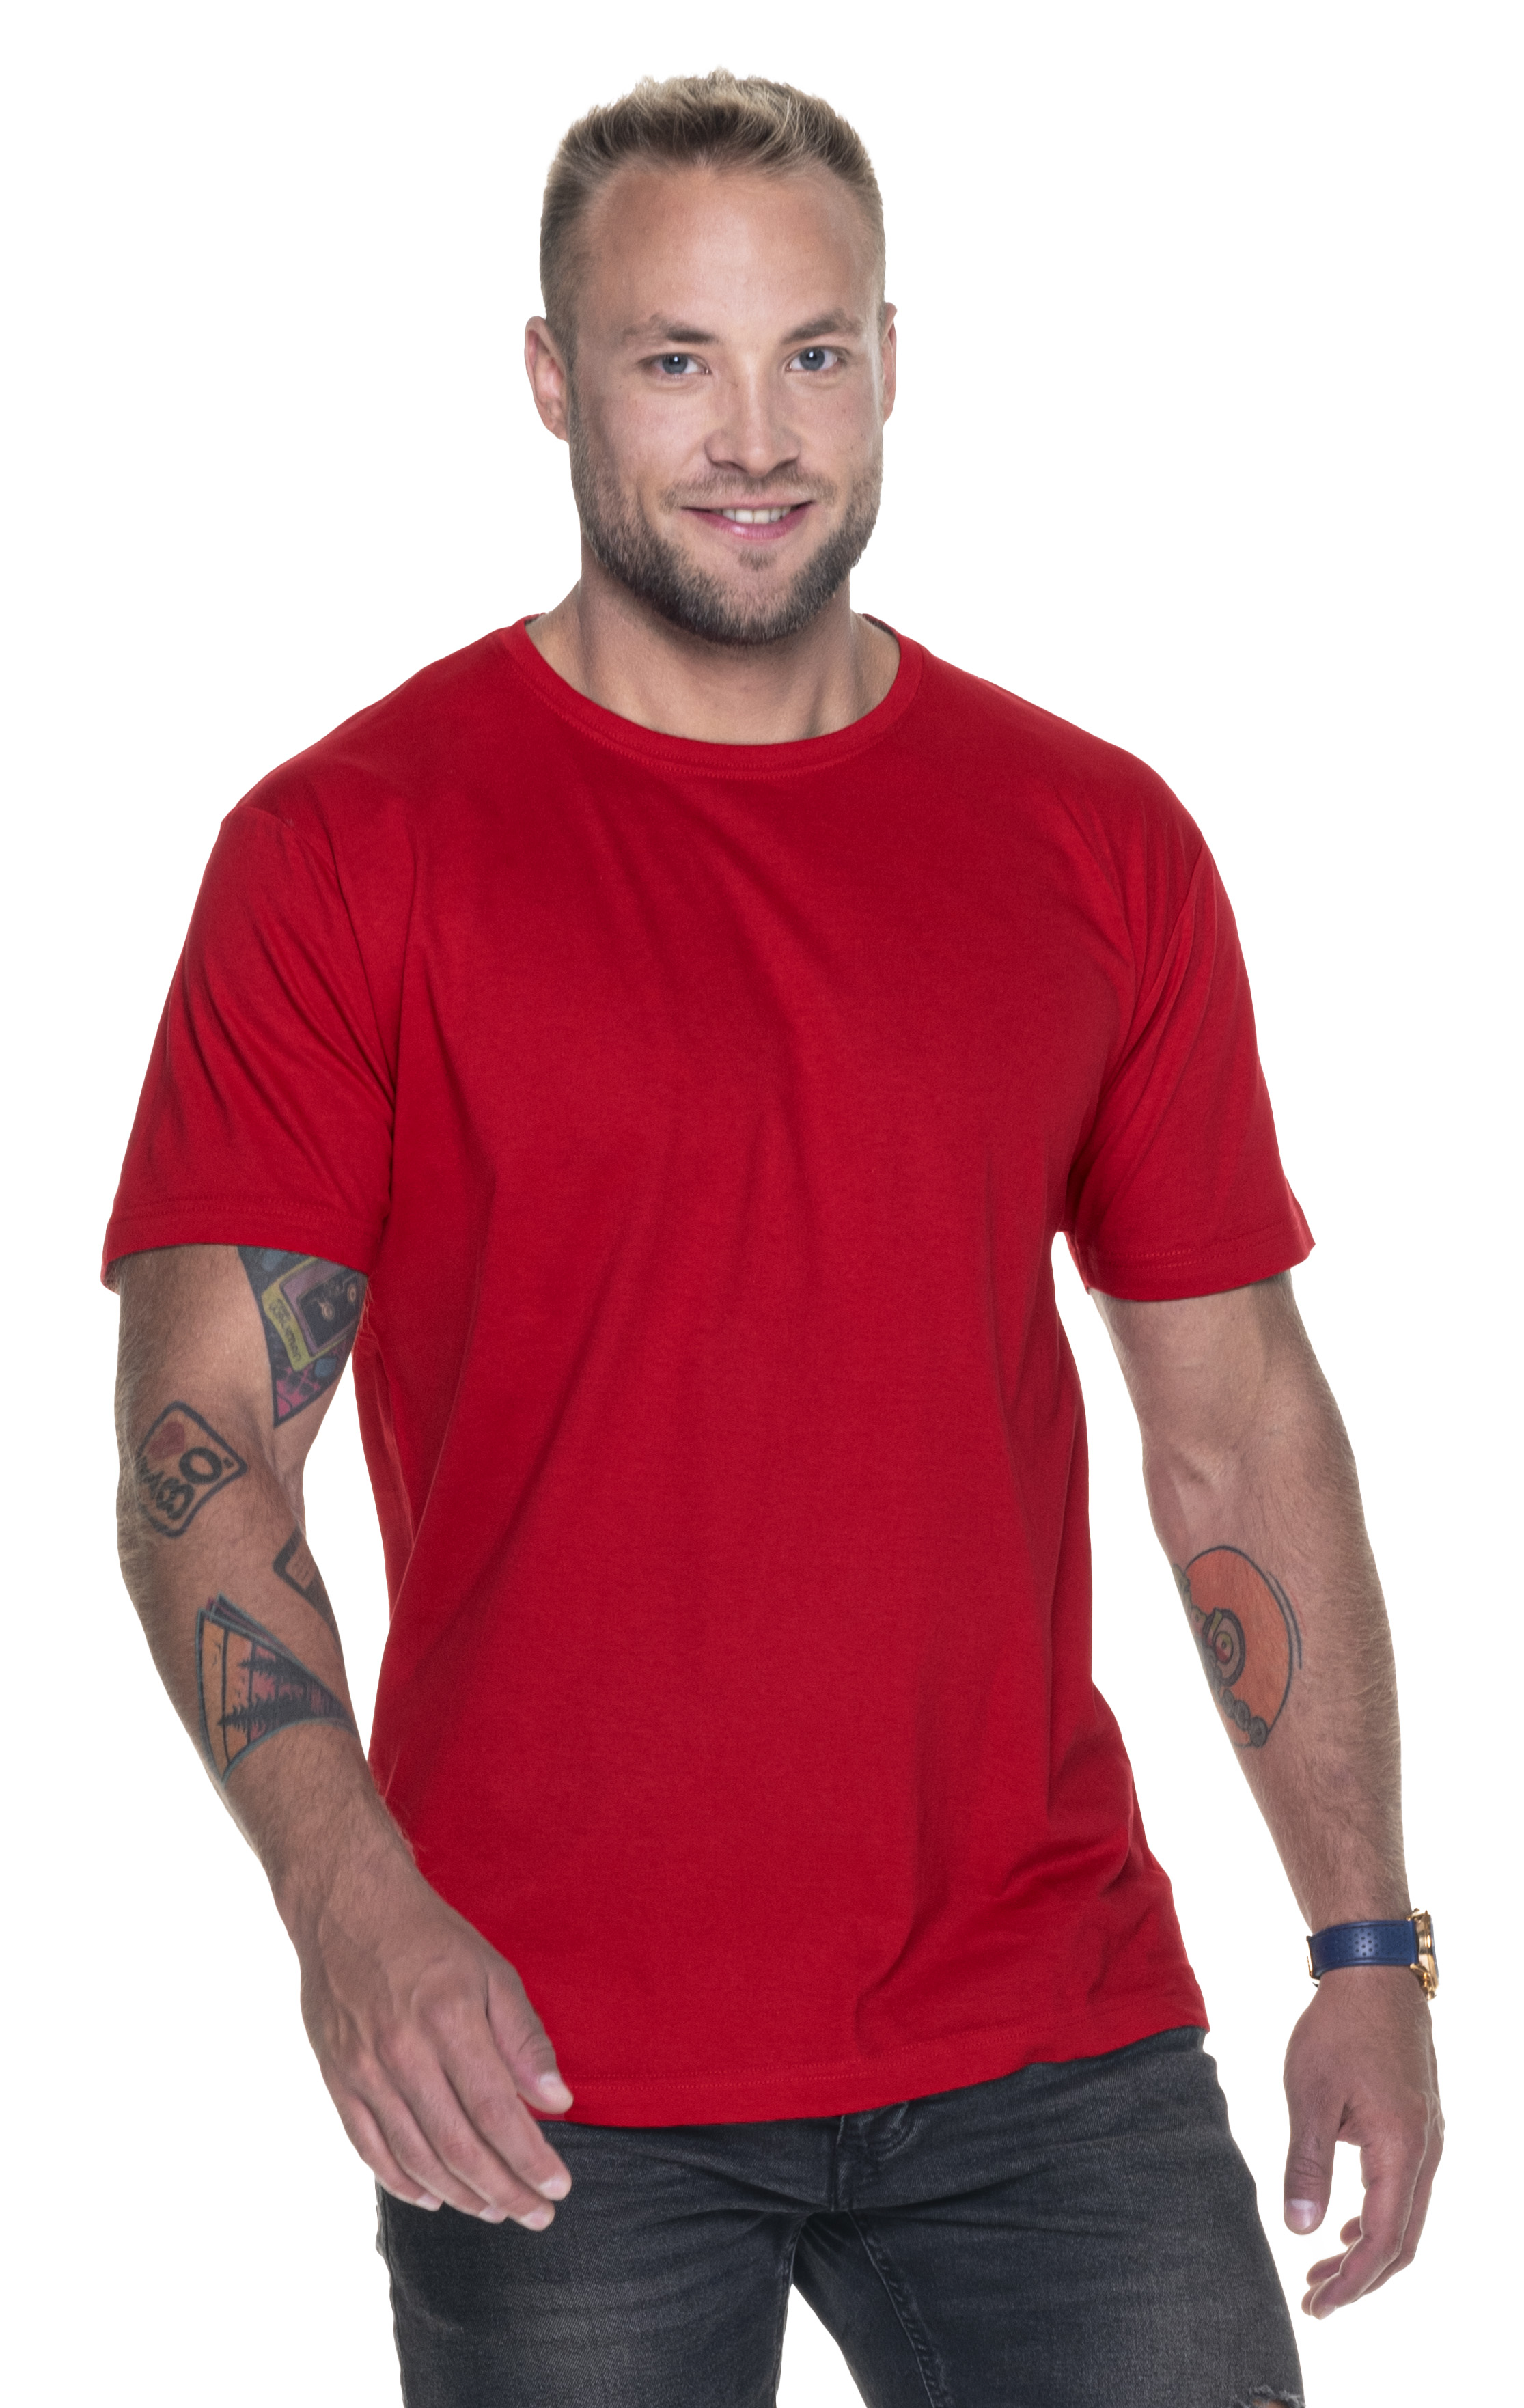 Koszulka Promostars Standard 150 - czerwona